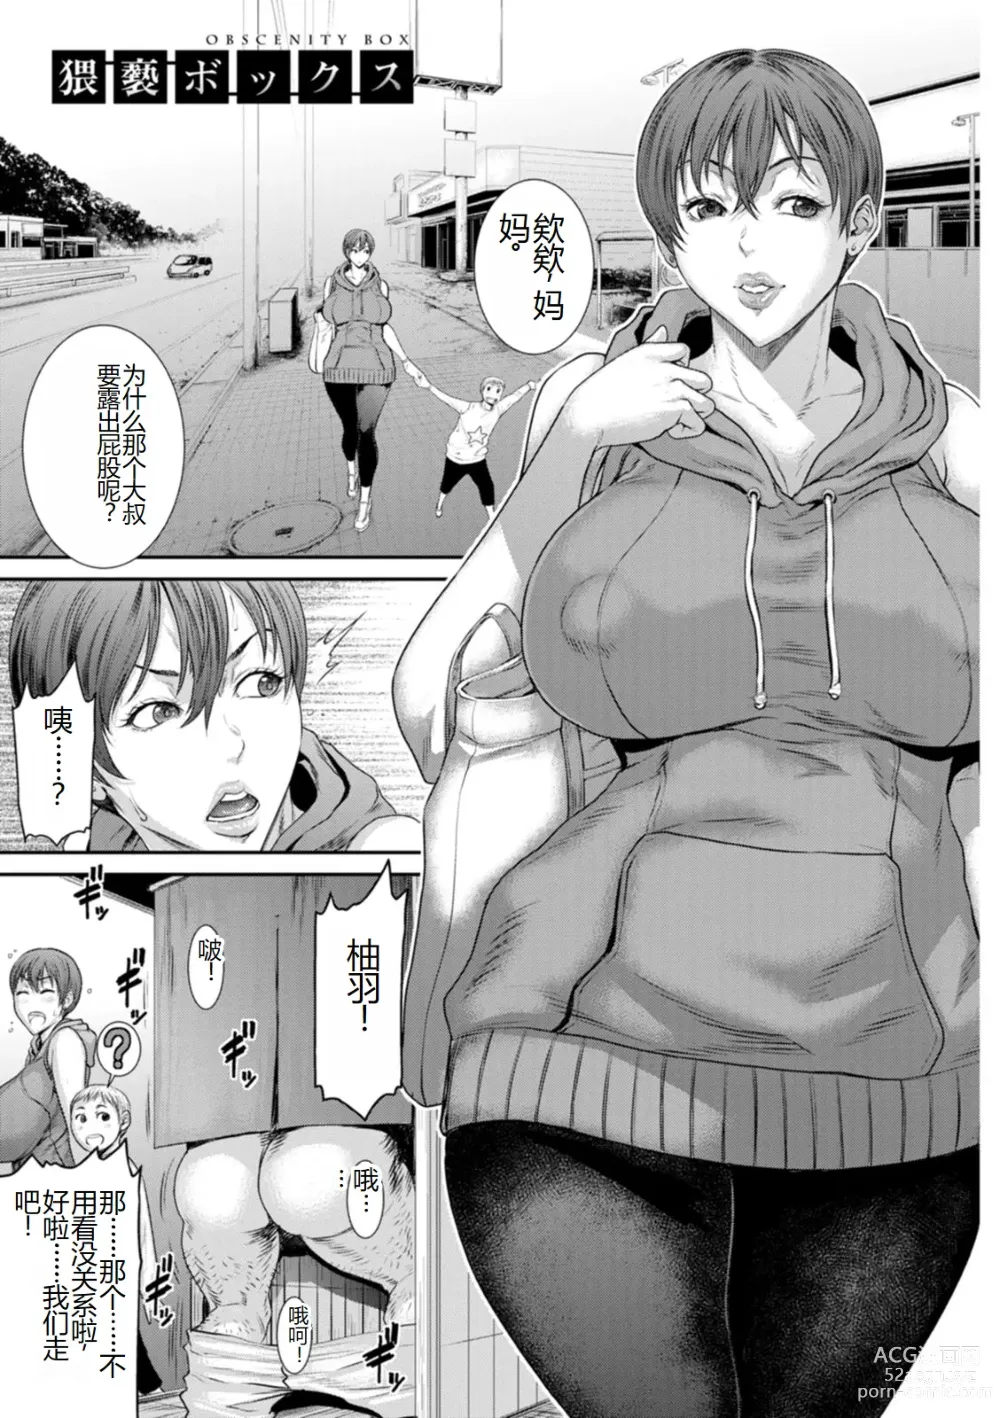 Page 7 of manga Waisetsu Box - Obscene Box